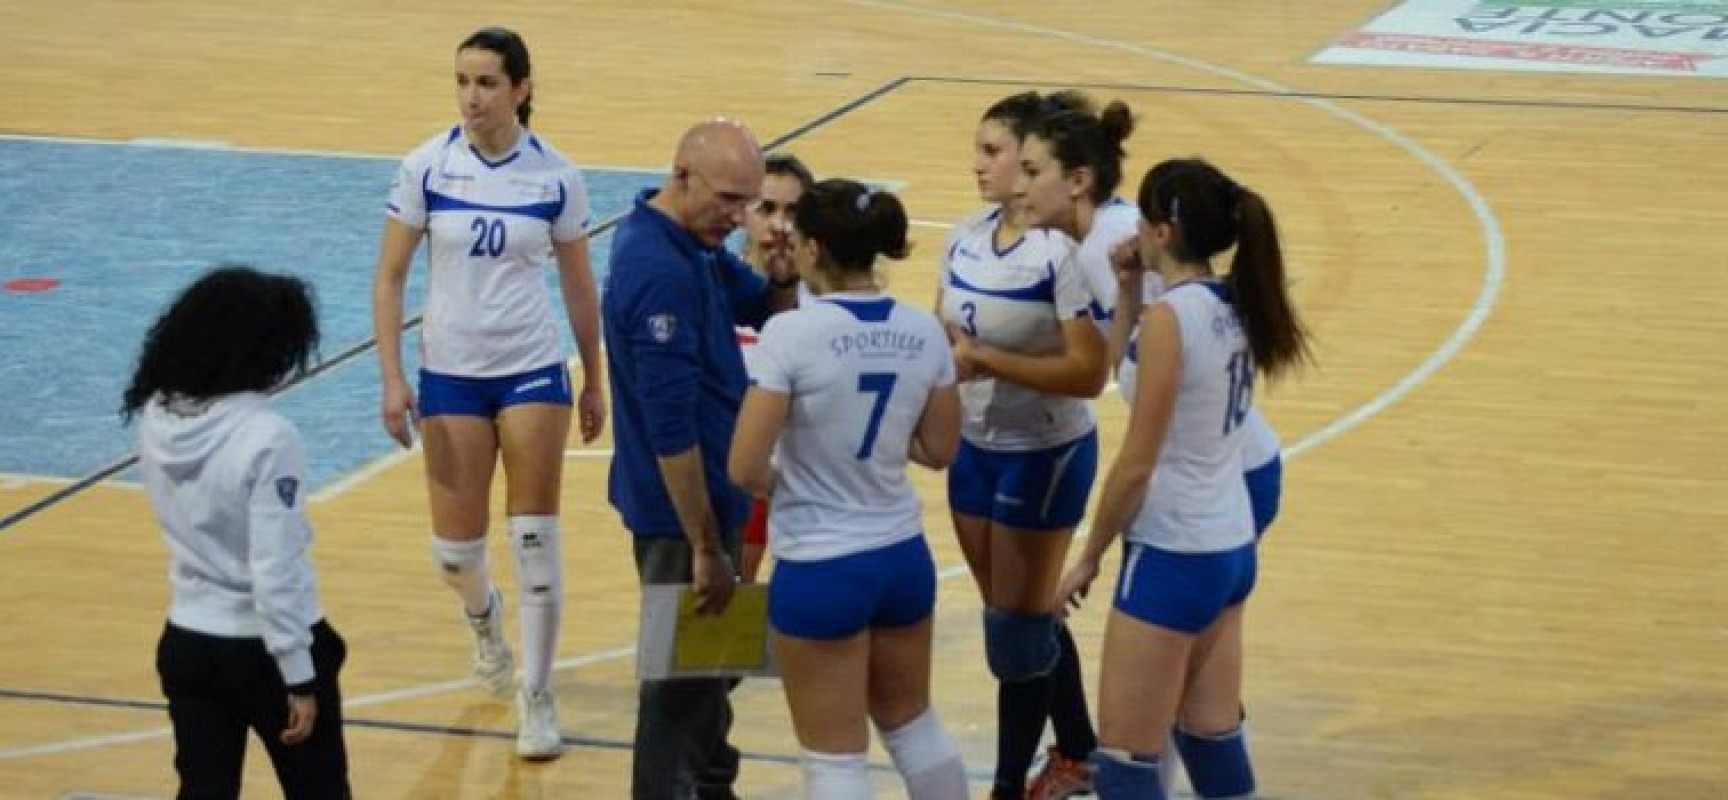 Sportilia Volley, la serie C vince e aspetta i playout contro Oria